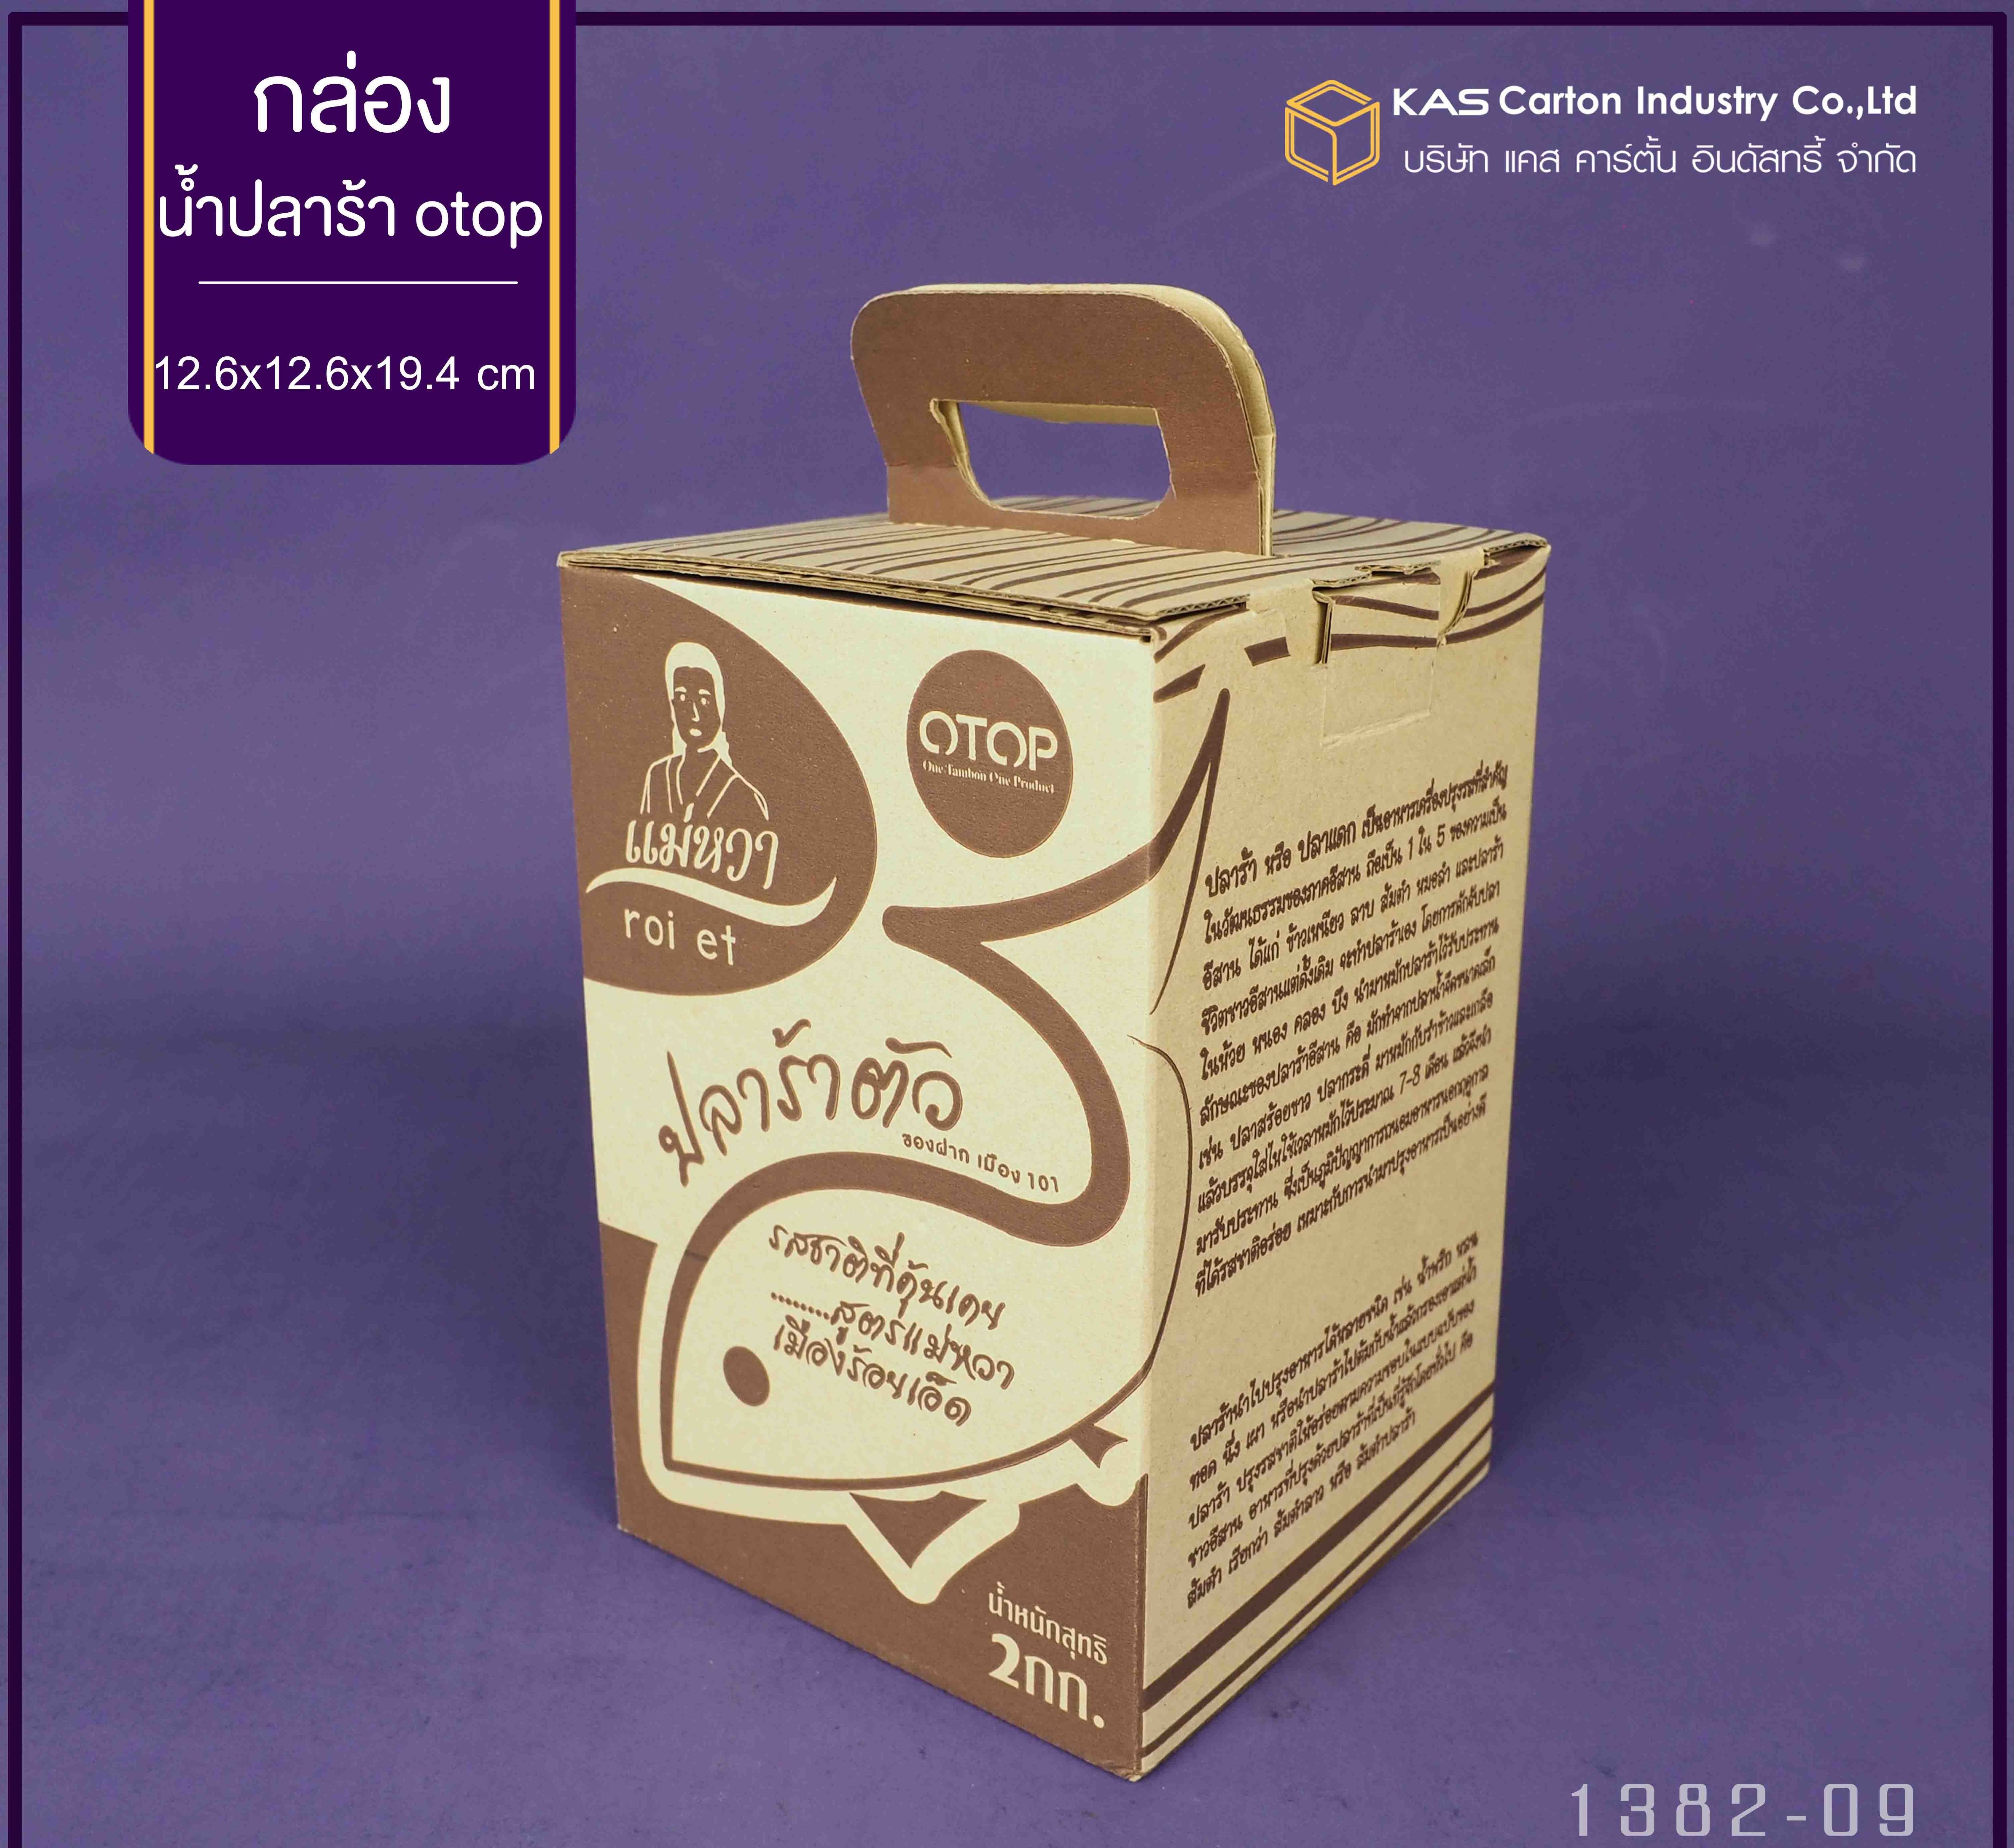 กล่องลูกฟูก สำเร็จรูป และ สั่งผลิต ตามความต้องการลูกค้า กล่องลูกฟูก SME กล่องกระดาษลูกฟูก สินค้า น้ำปลาร้า OTOP  Brand แม่หวา